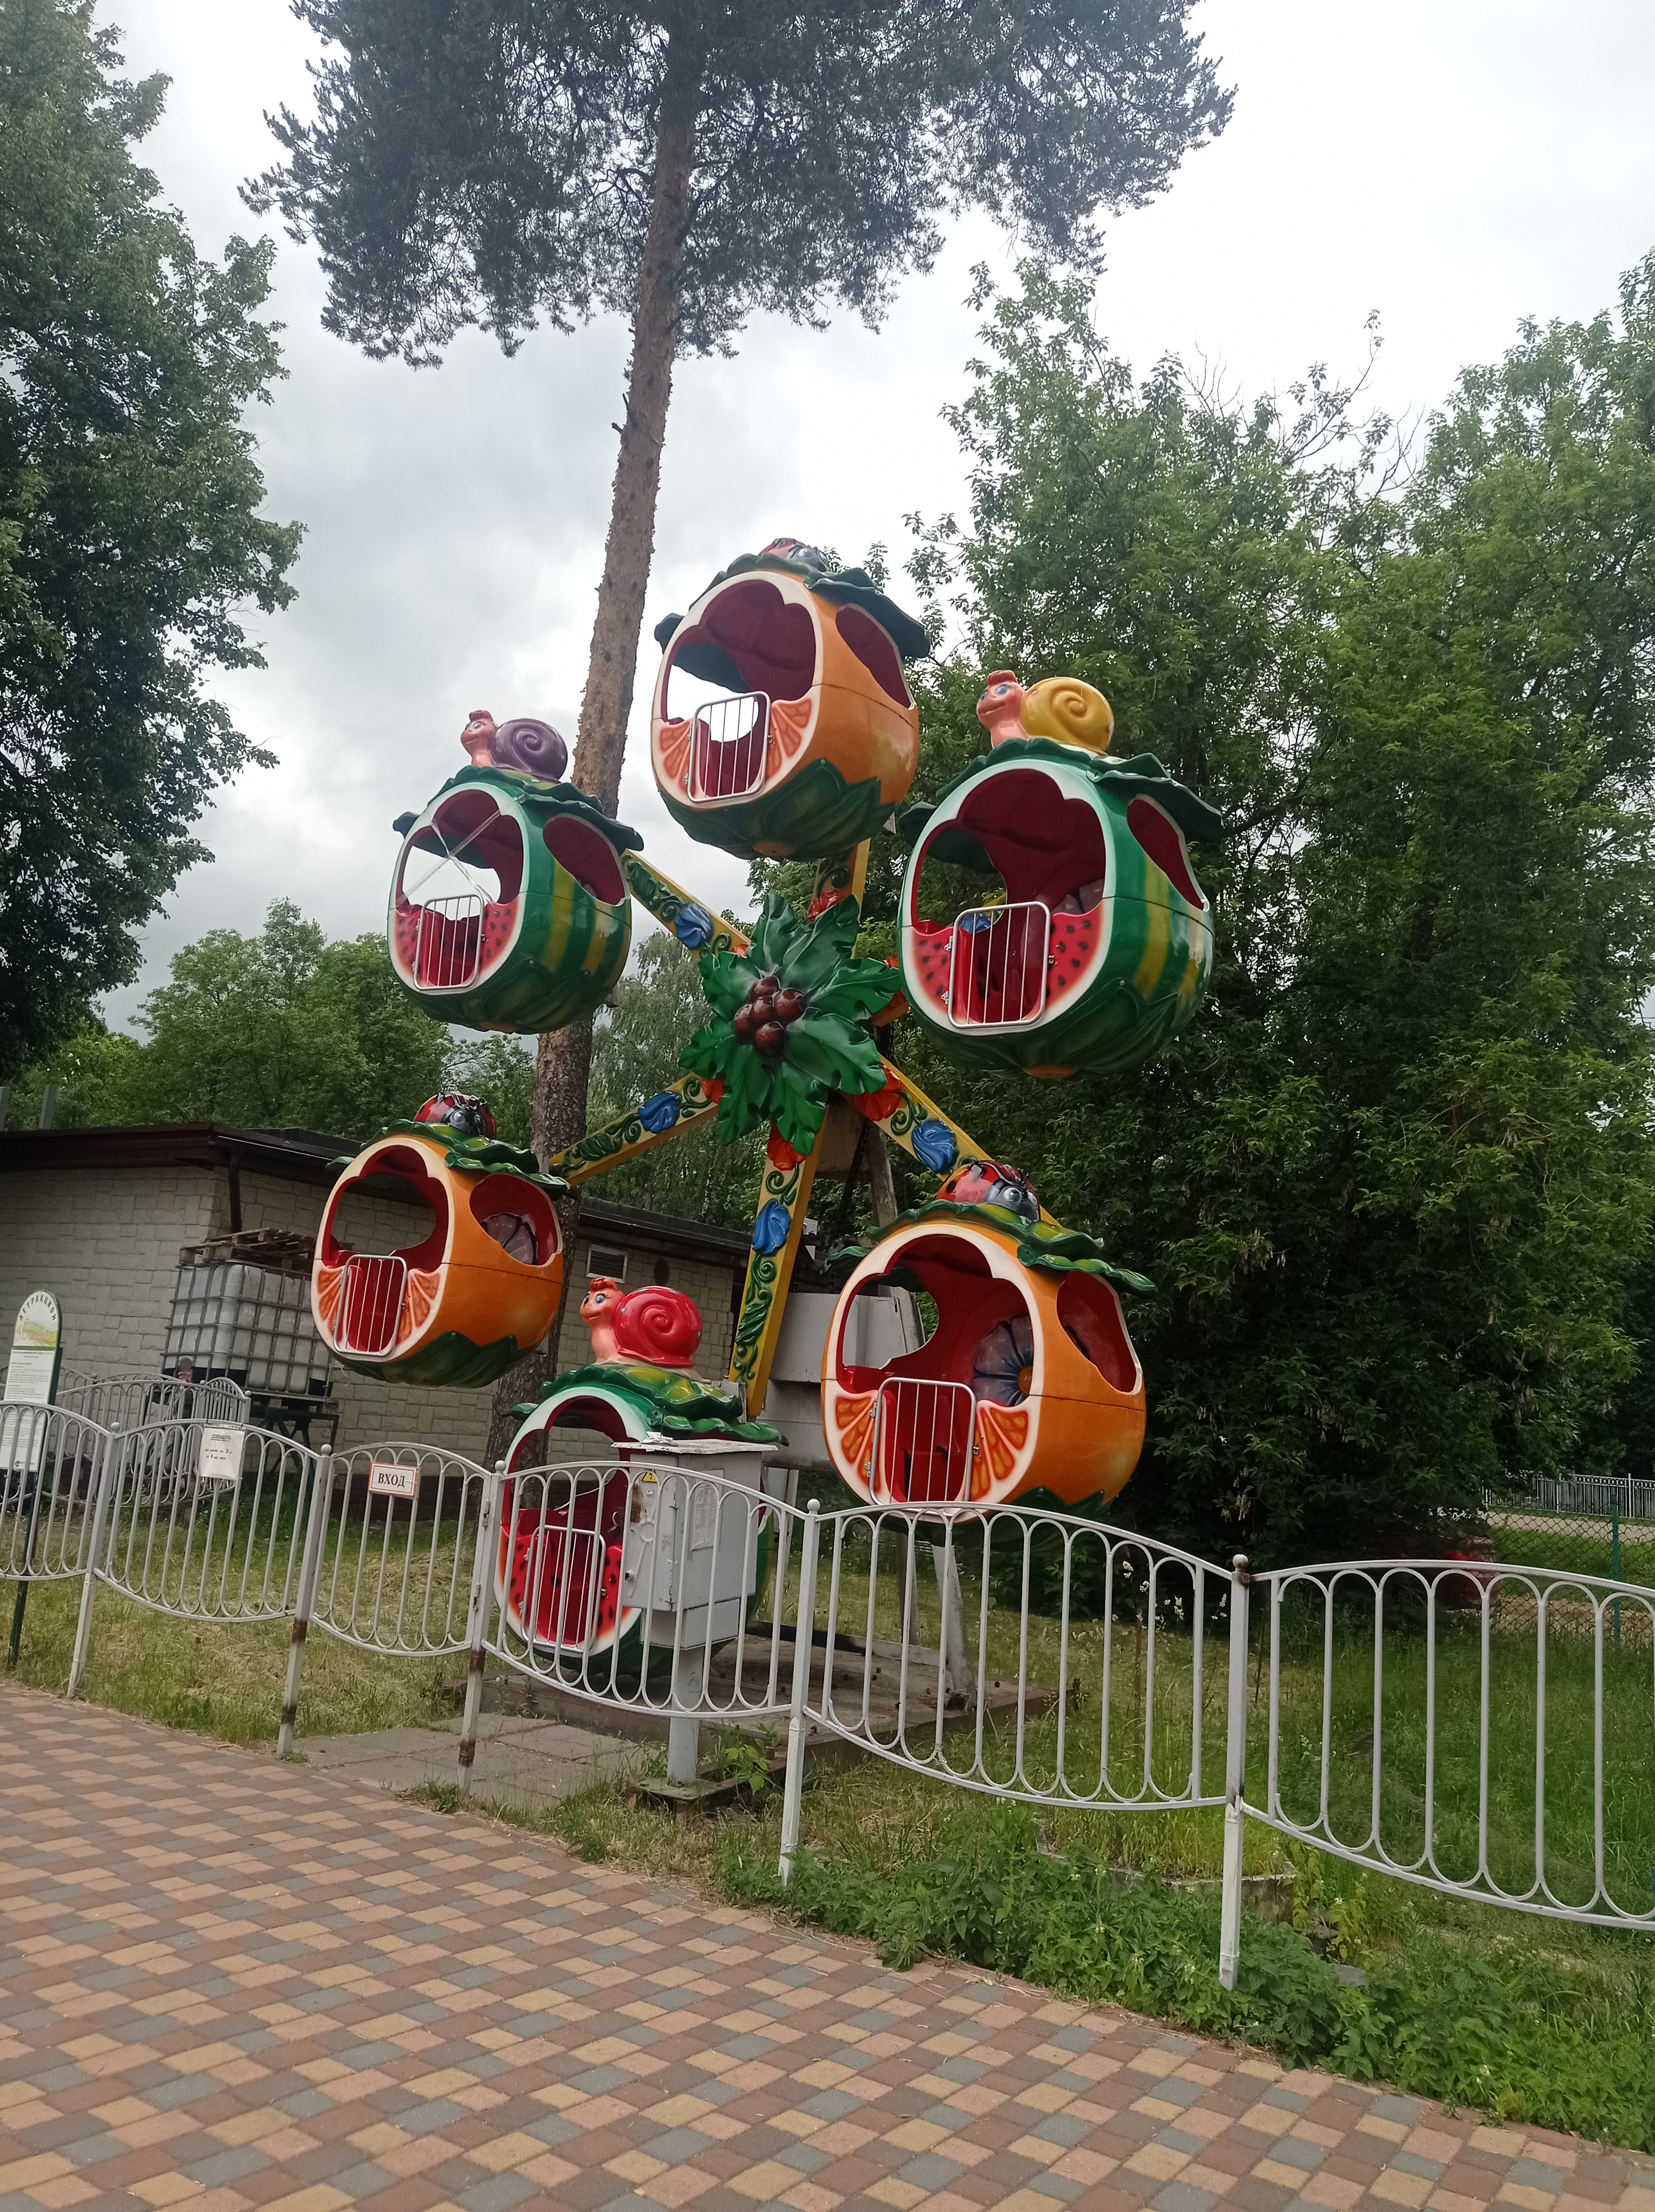 Аттракцион для детей "Ромашка" в парке Степанова.